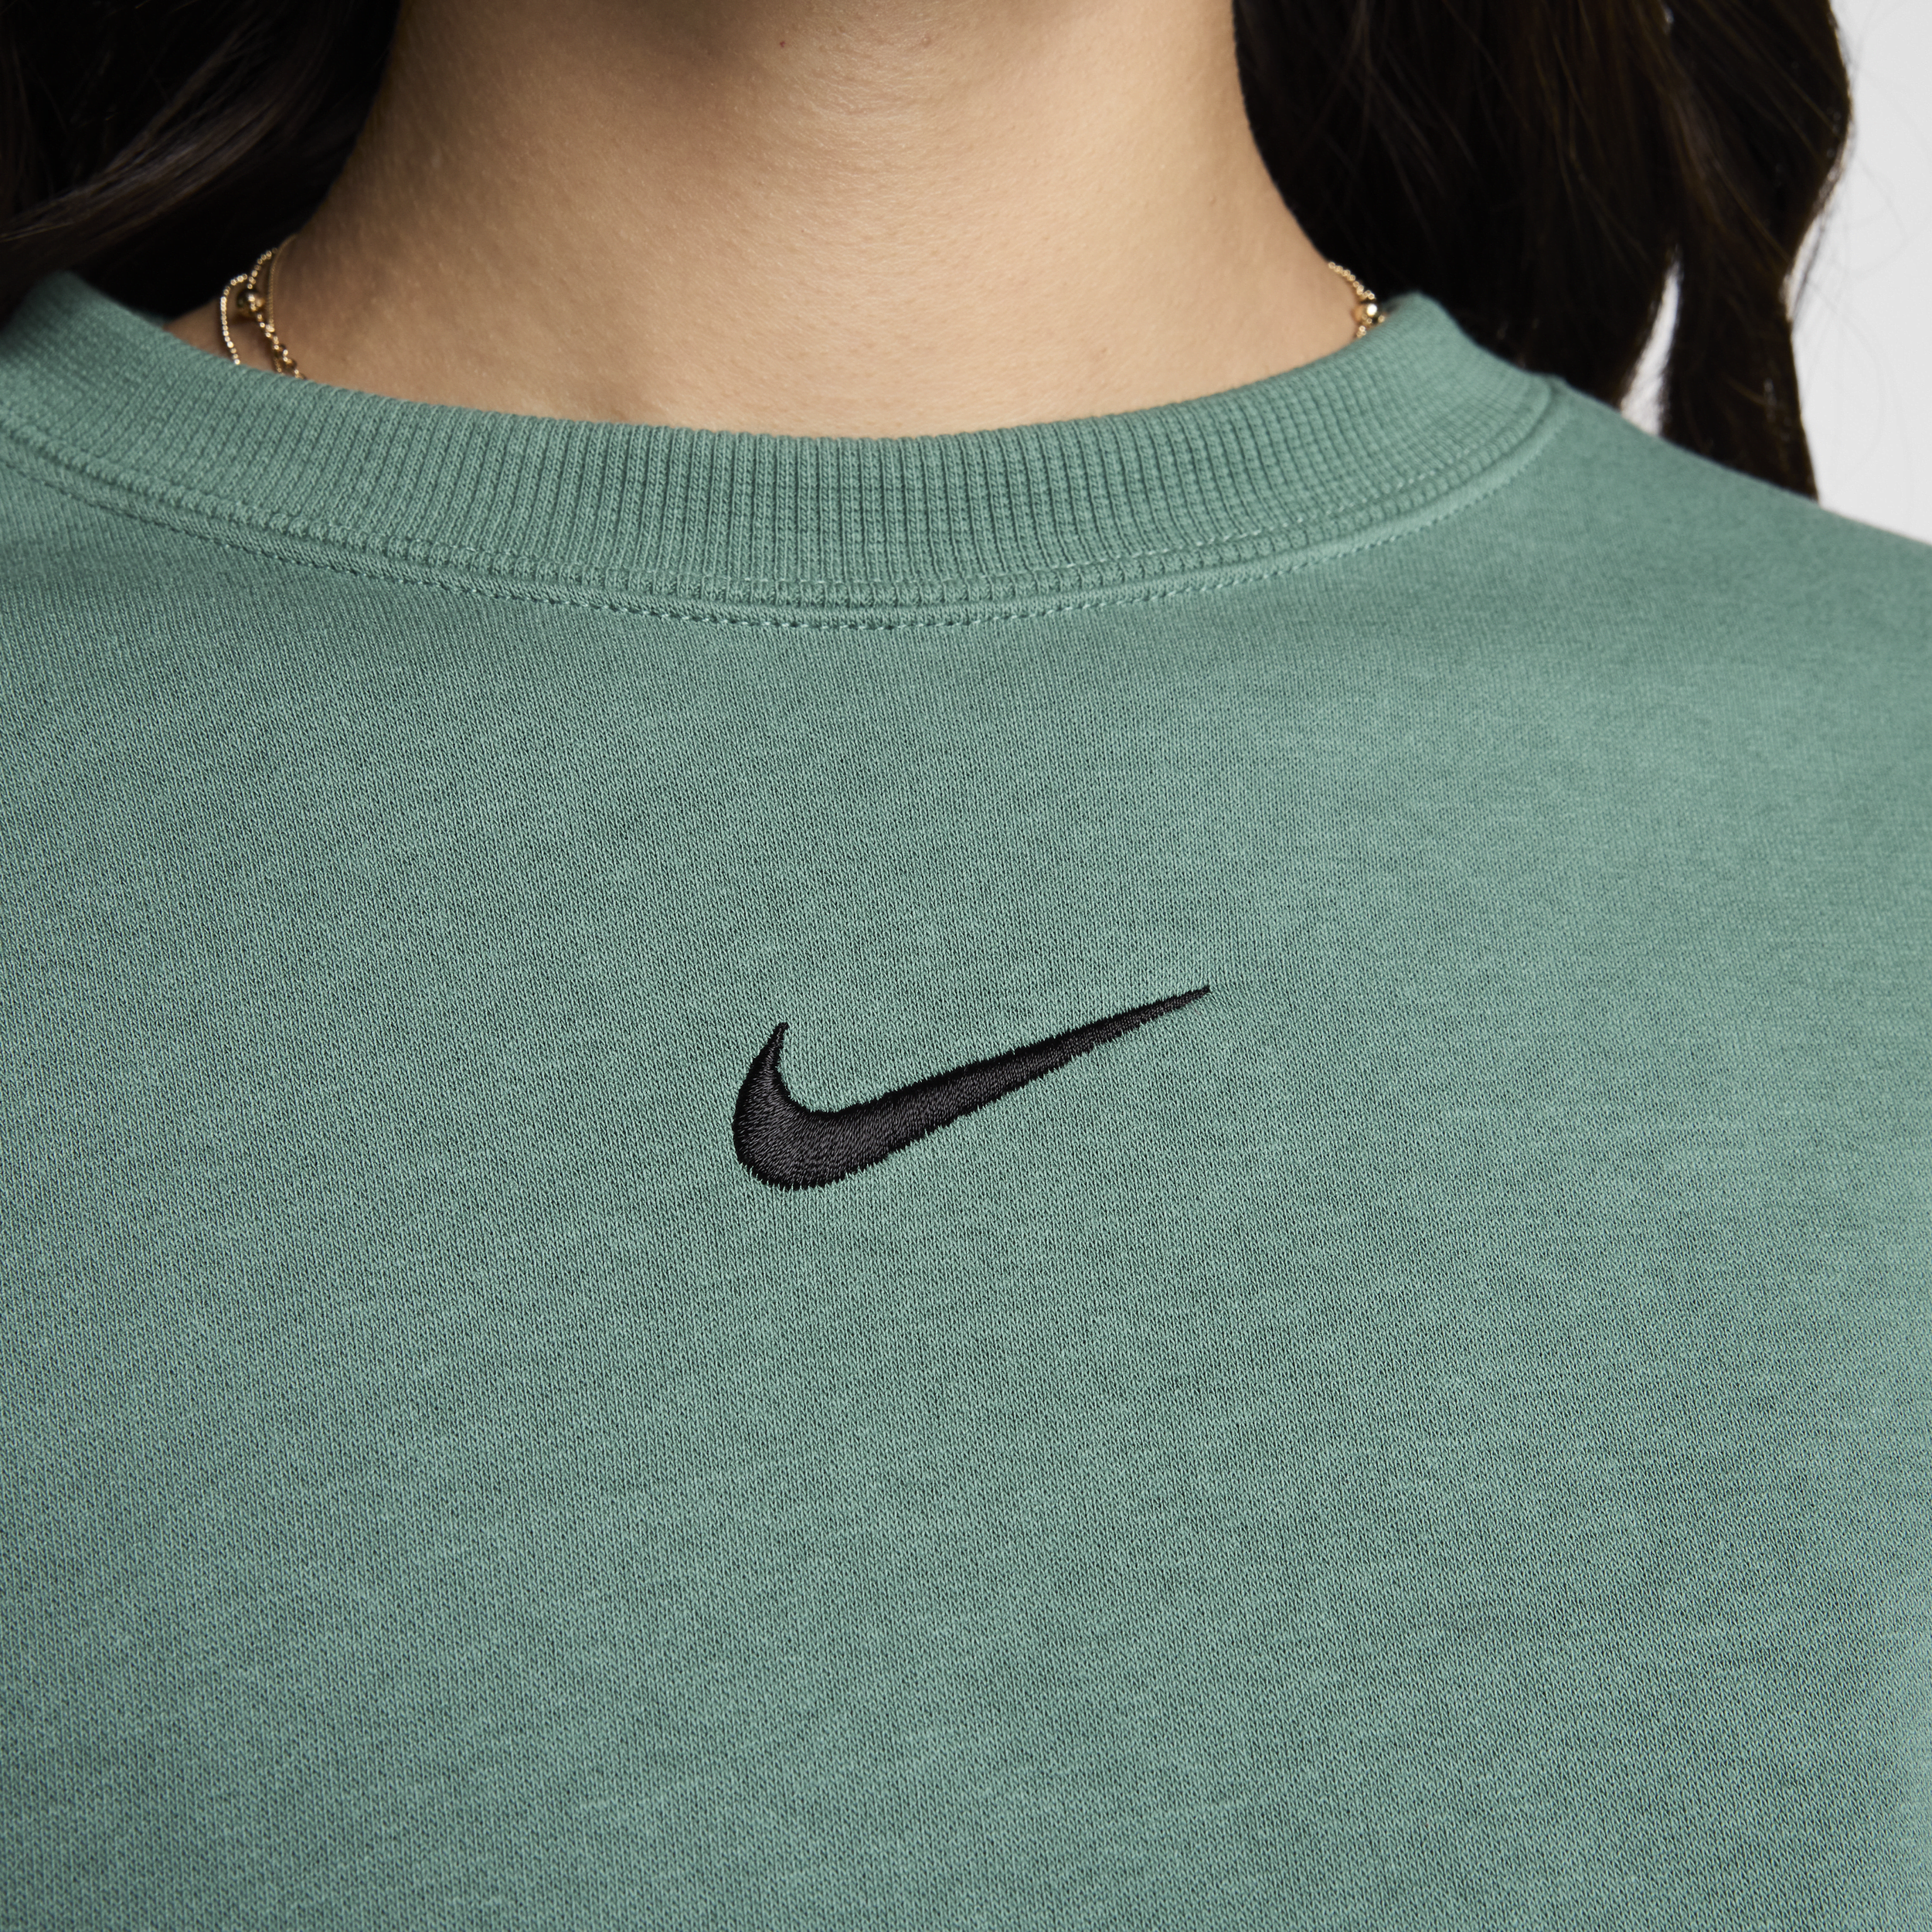 Nike Sportswear Phoenix Fleece extra oversized sweatshirt met ronde hals voor dames Groen